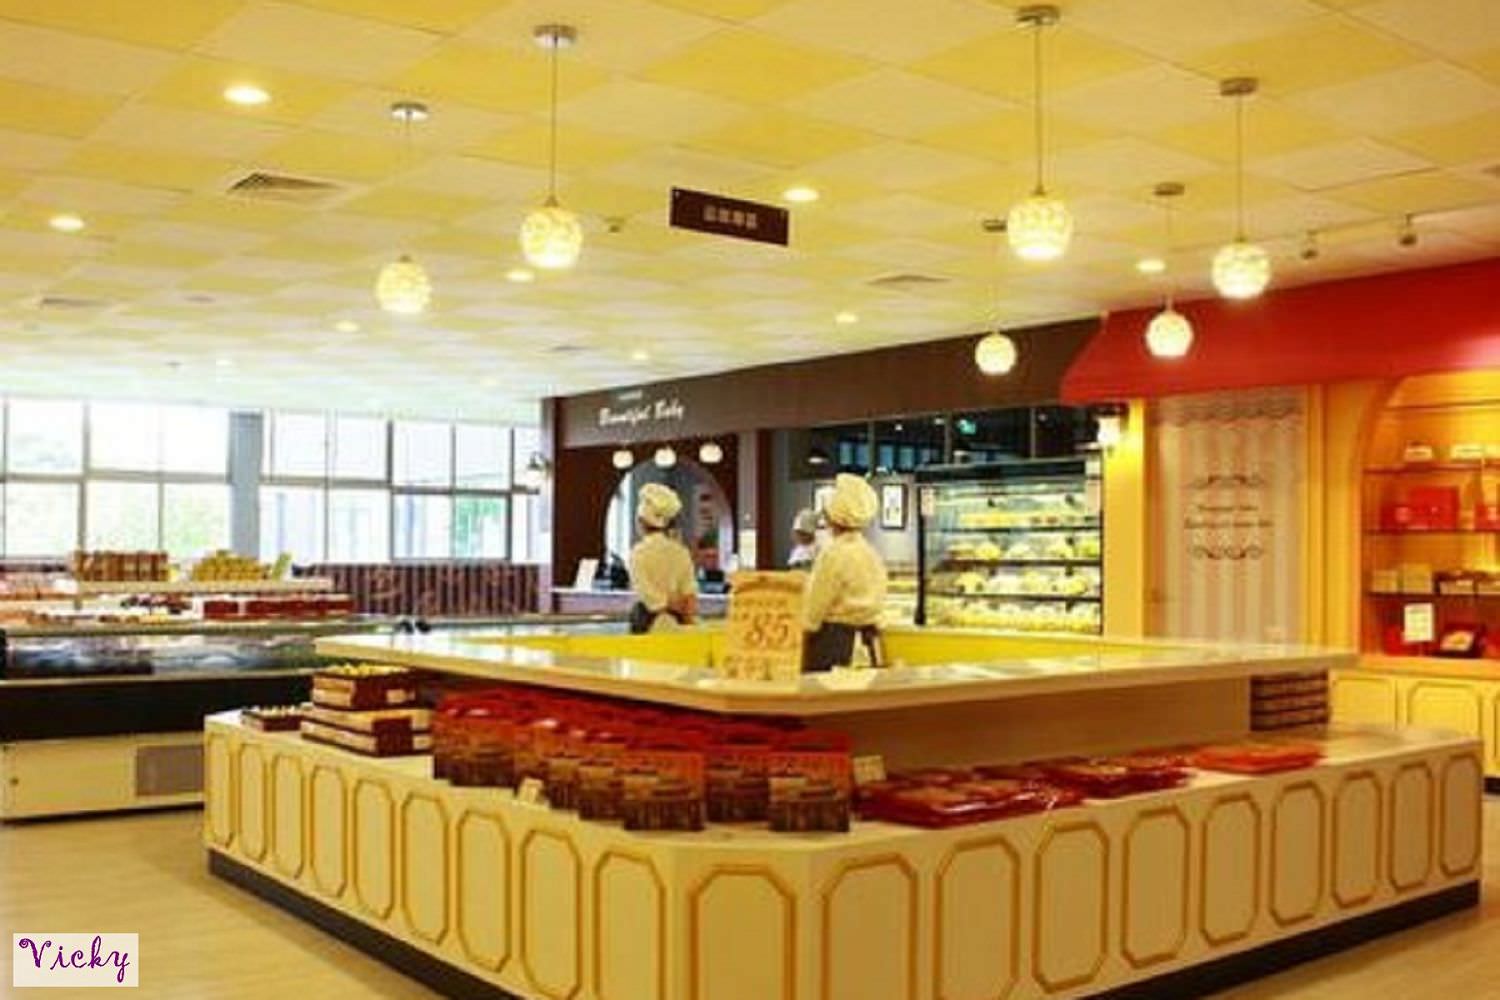 台南景點︱以「食」「立」觀光，好「食」「立」觀光工廠：奇美食品幸福工廠、彼緹娃藝術蛋糕觀光工廠